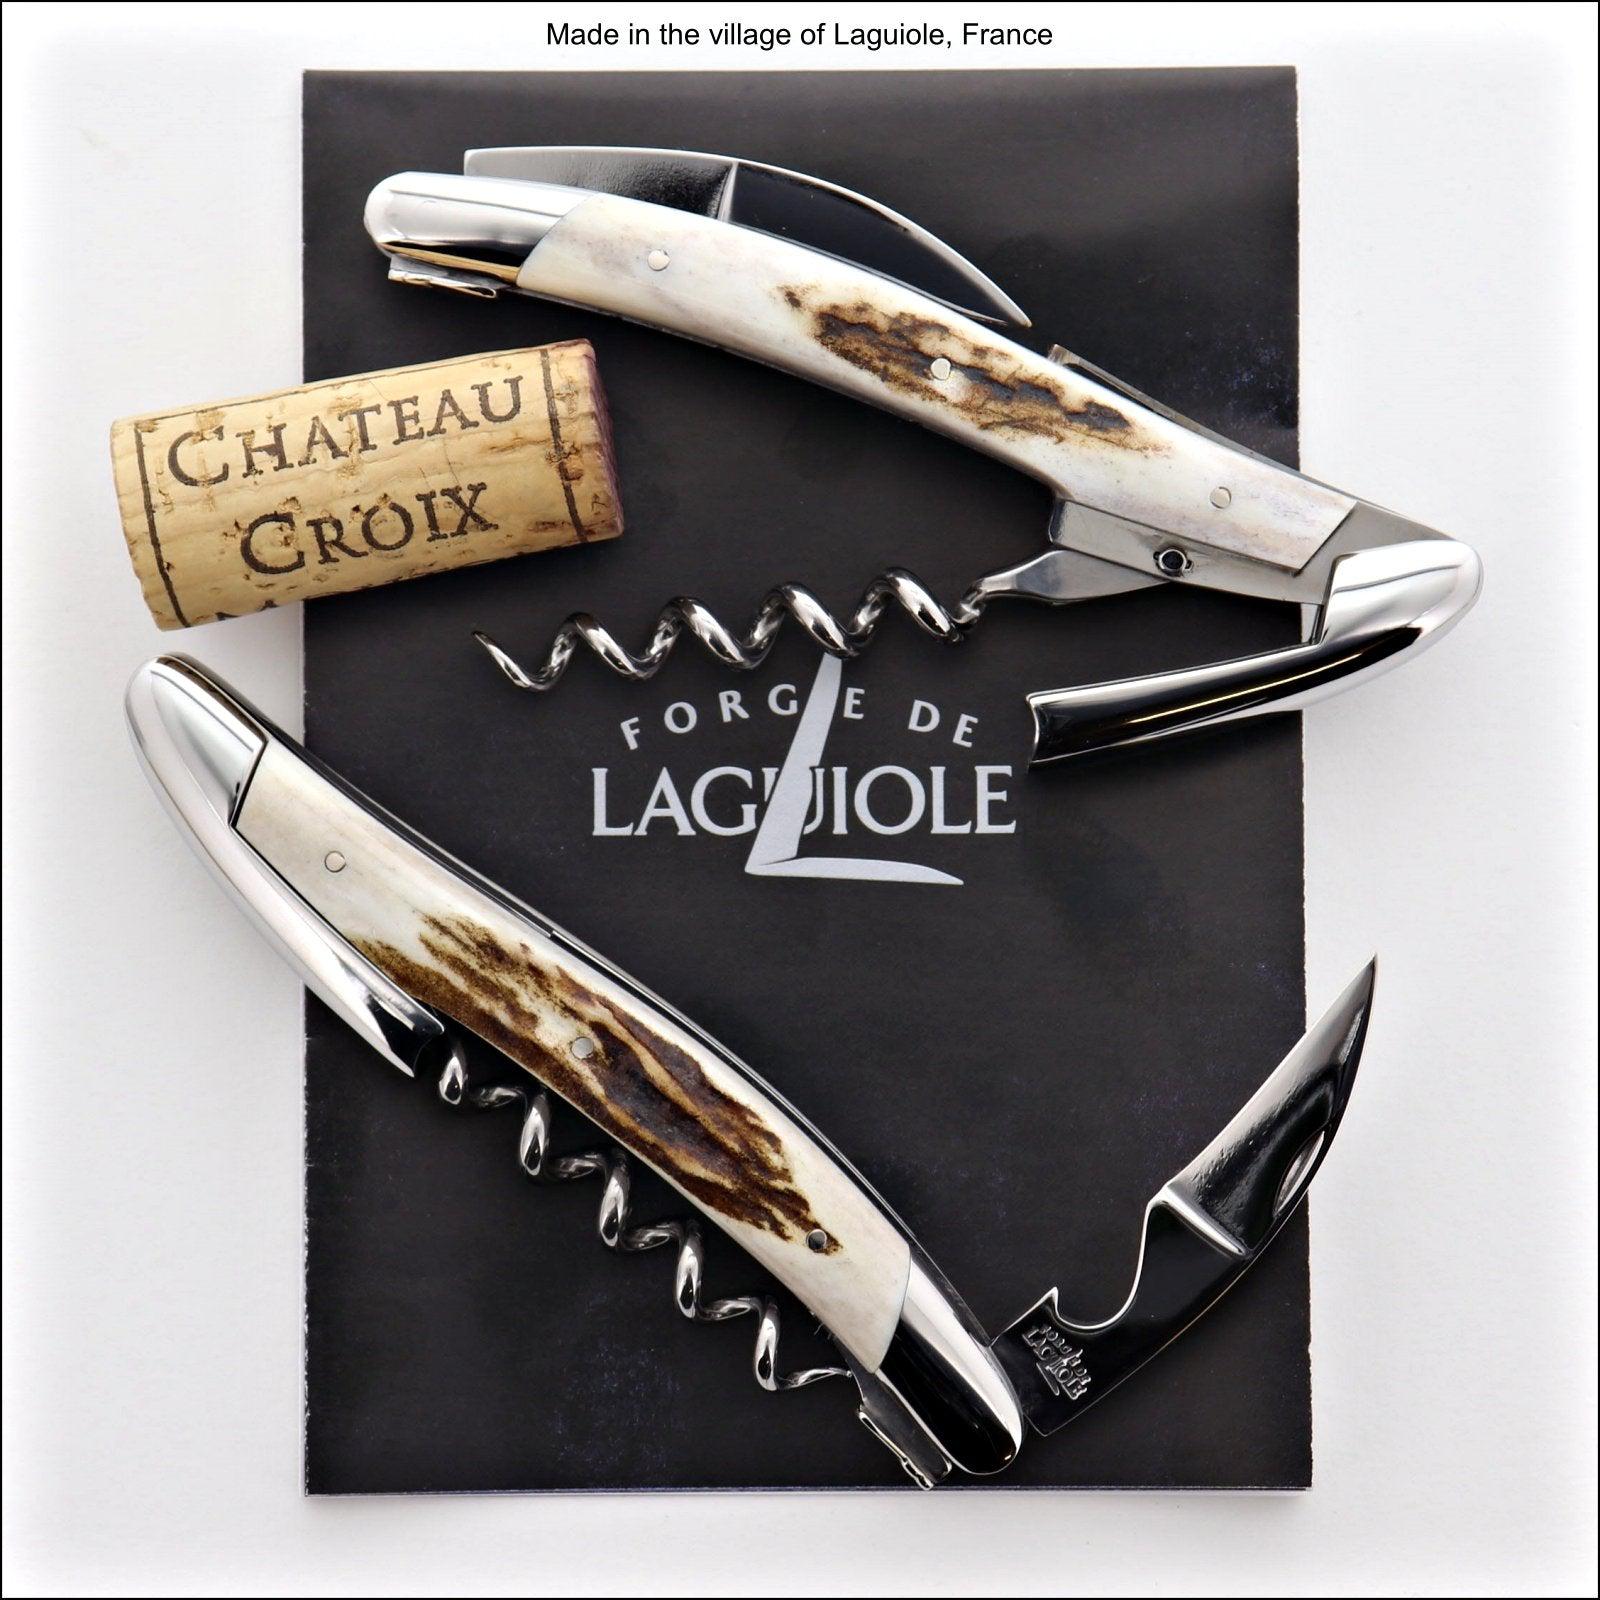 Sublimes couteaux Laguiole.; : image de Forge de Laguiole - Tripadvisor